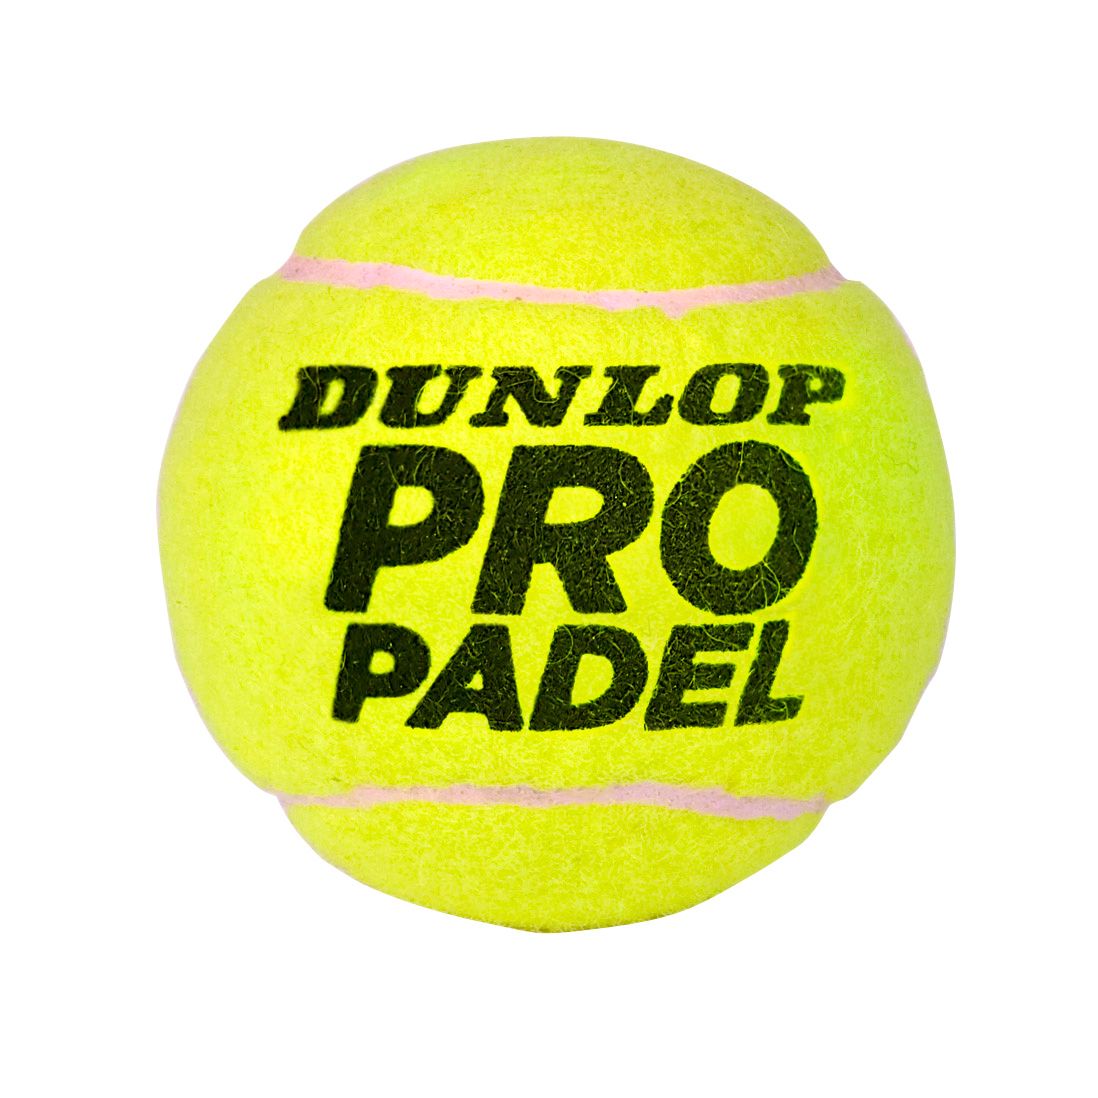 Dunlop Pro Padel Balls - Tube of 3